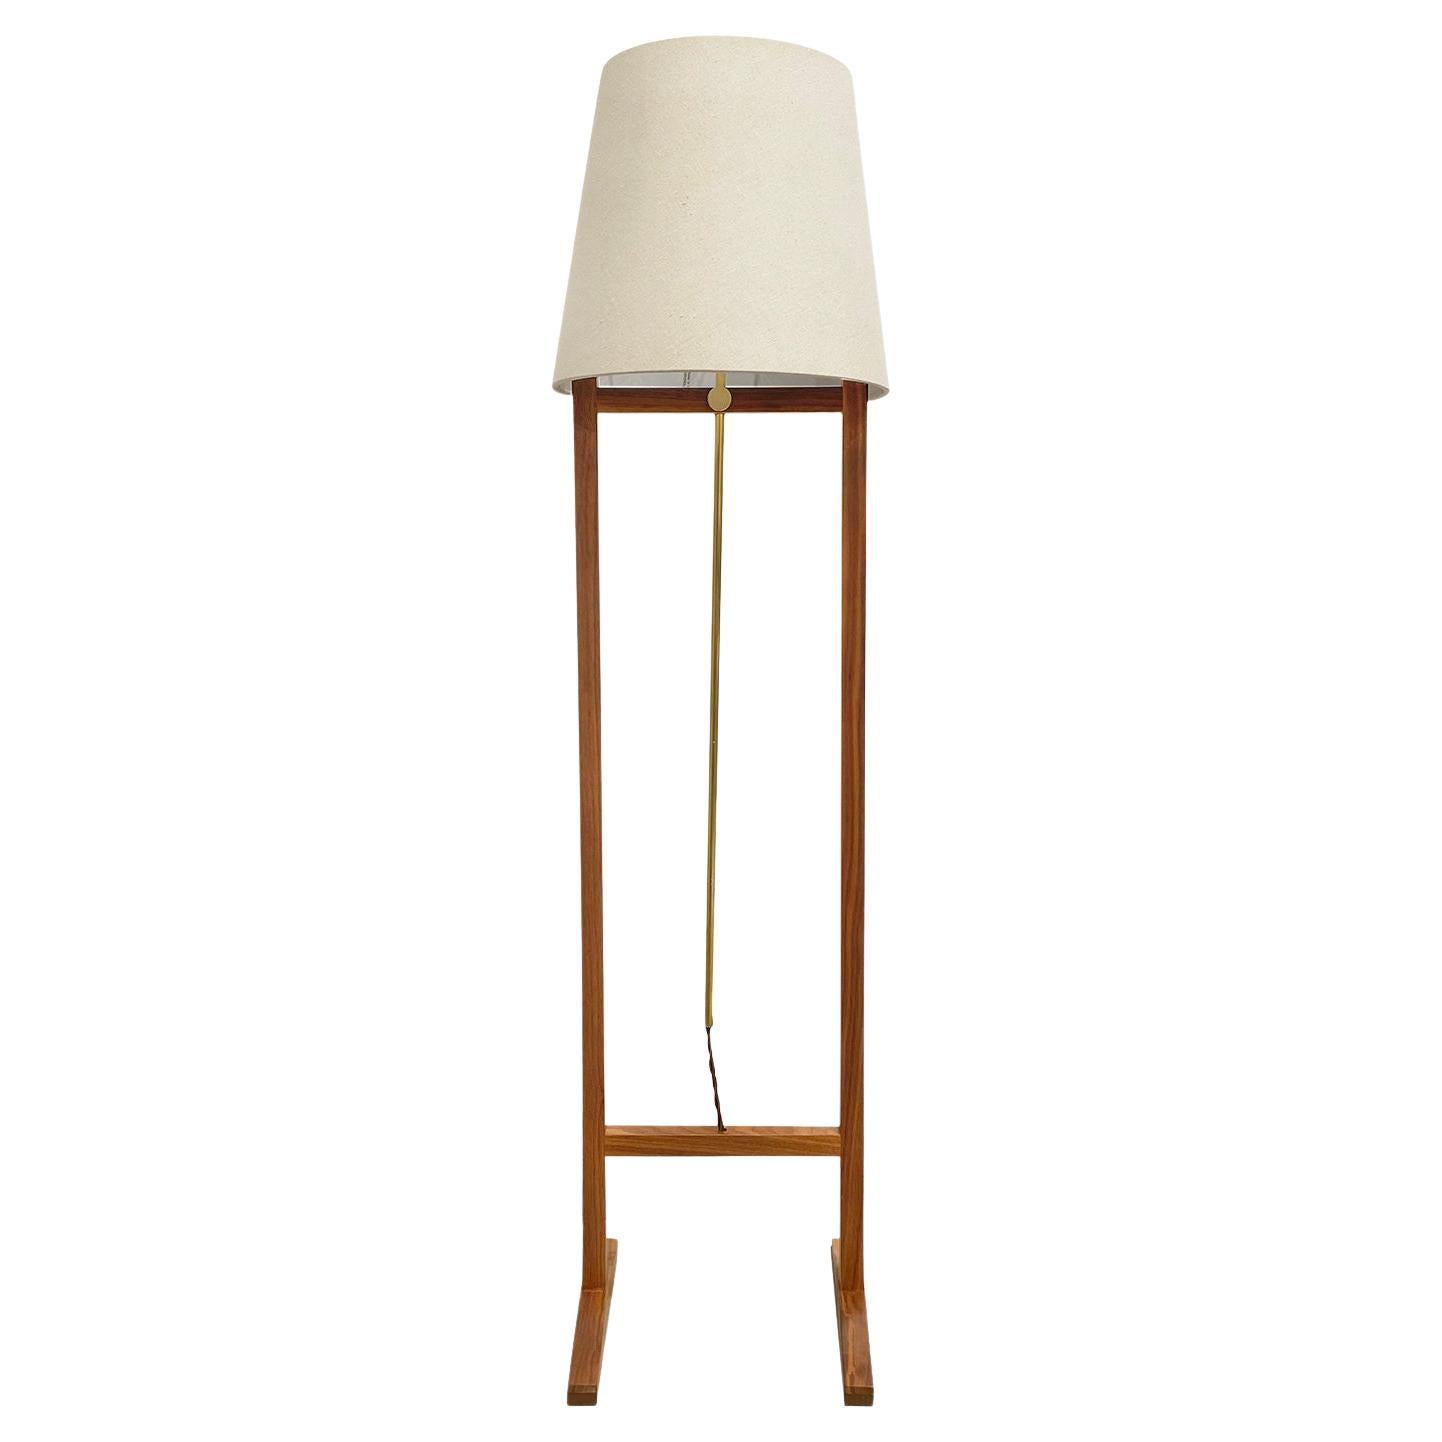 20th Century Swedish Svenskt Tenn Walnut Floor Lamp, Brass Light by Josef Frank